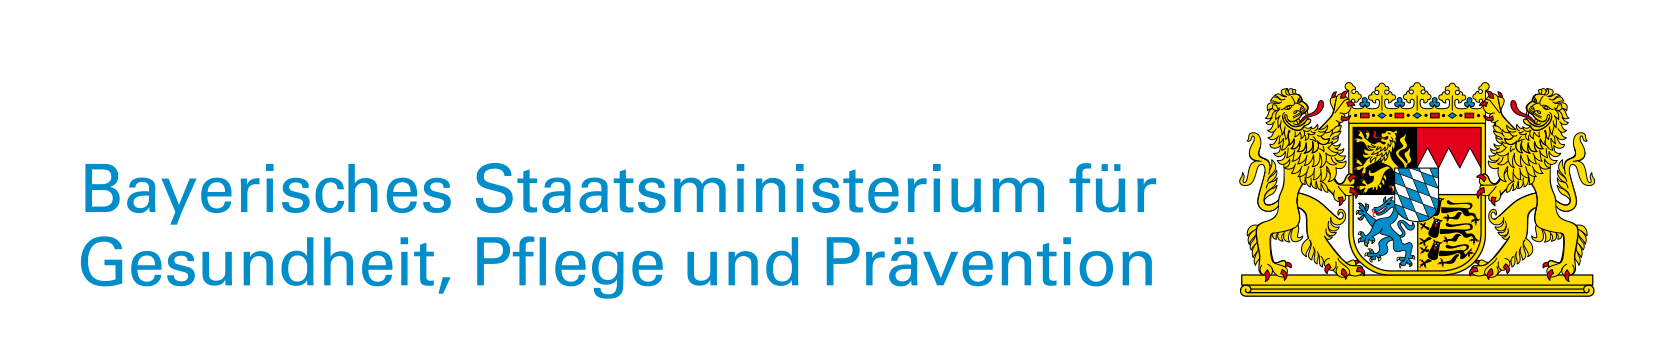 Bayerisches Staatswappen mit Schriftzug Bayerisches Staatsministerium für Gesundheit, Pflege und Prävention - interner Link